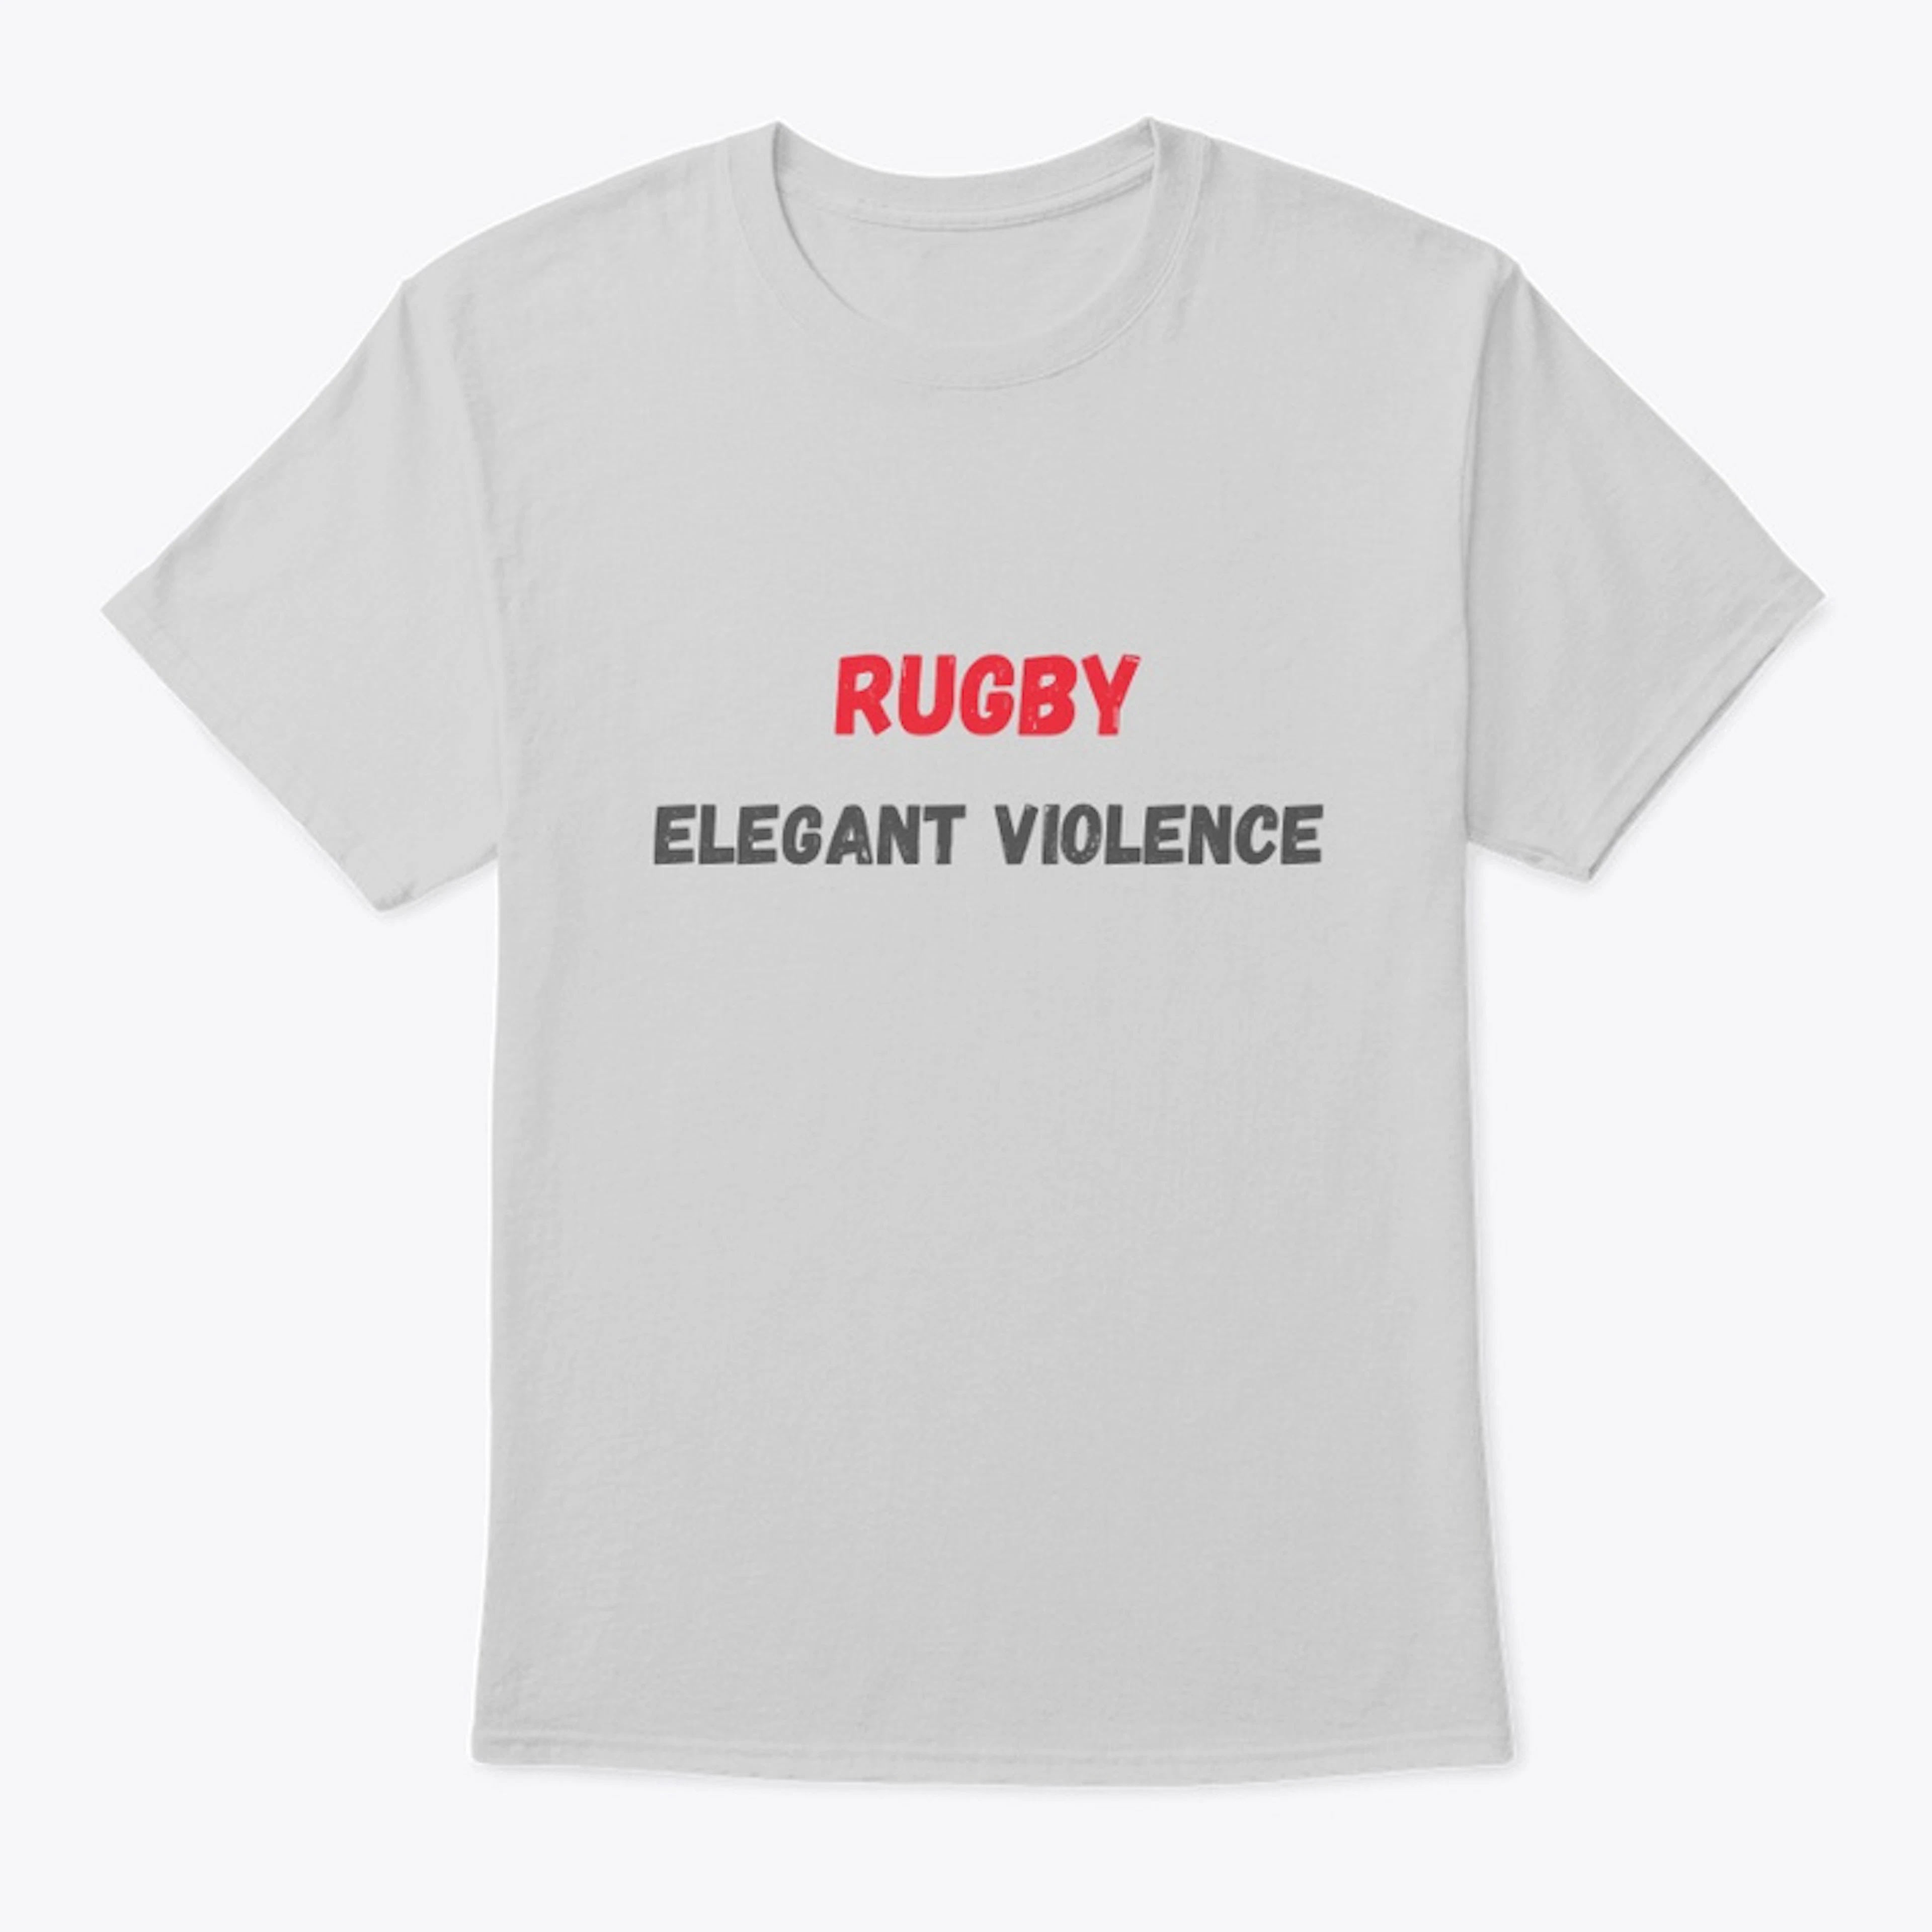 Rugby - Elegant Violence